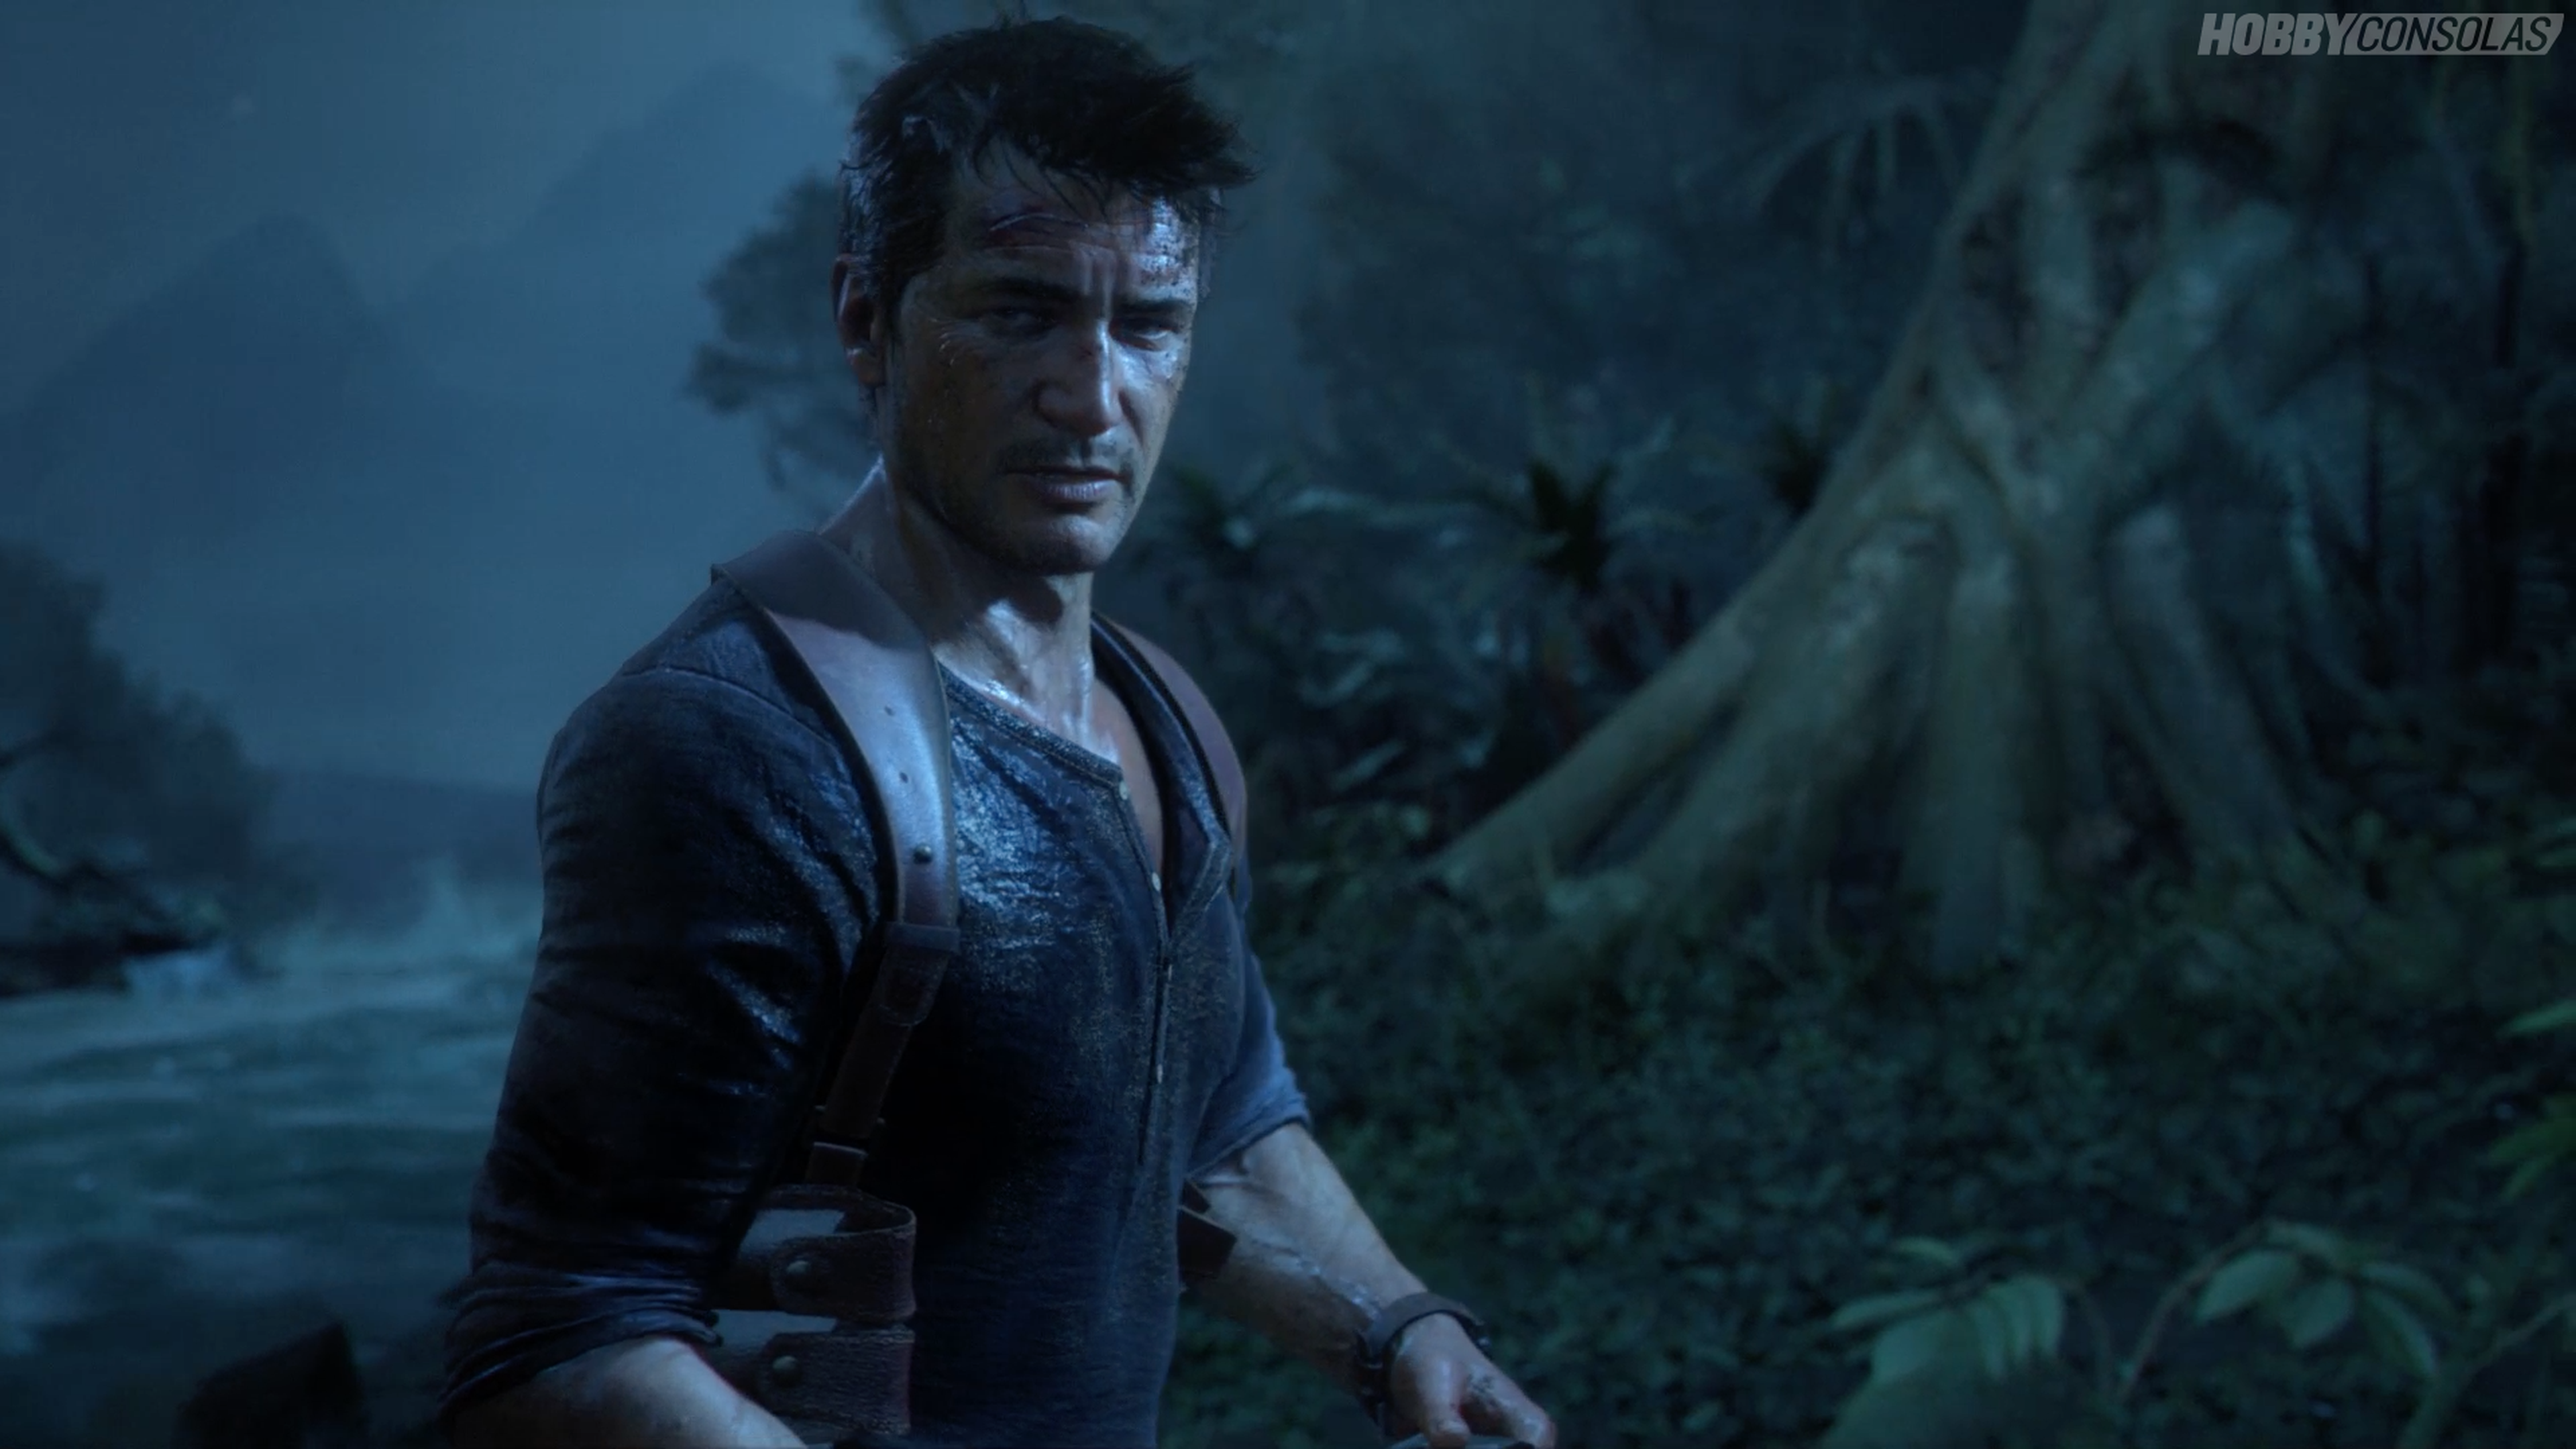 La exclusividad de Tomb Raider, bug en la demo de Uncharted 4... Las noticias de la semana 14/12/14